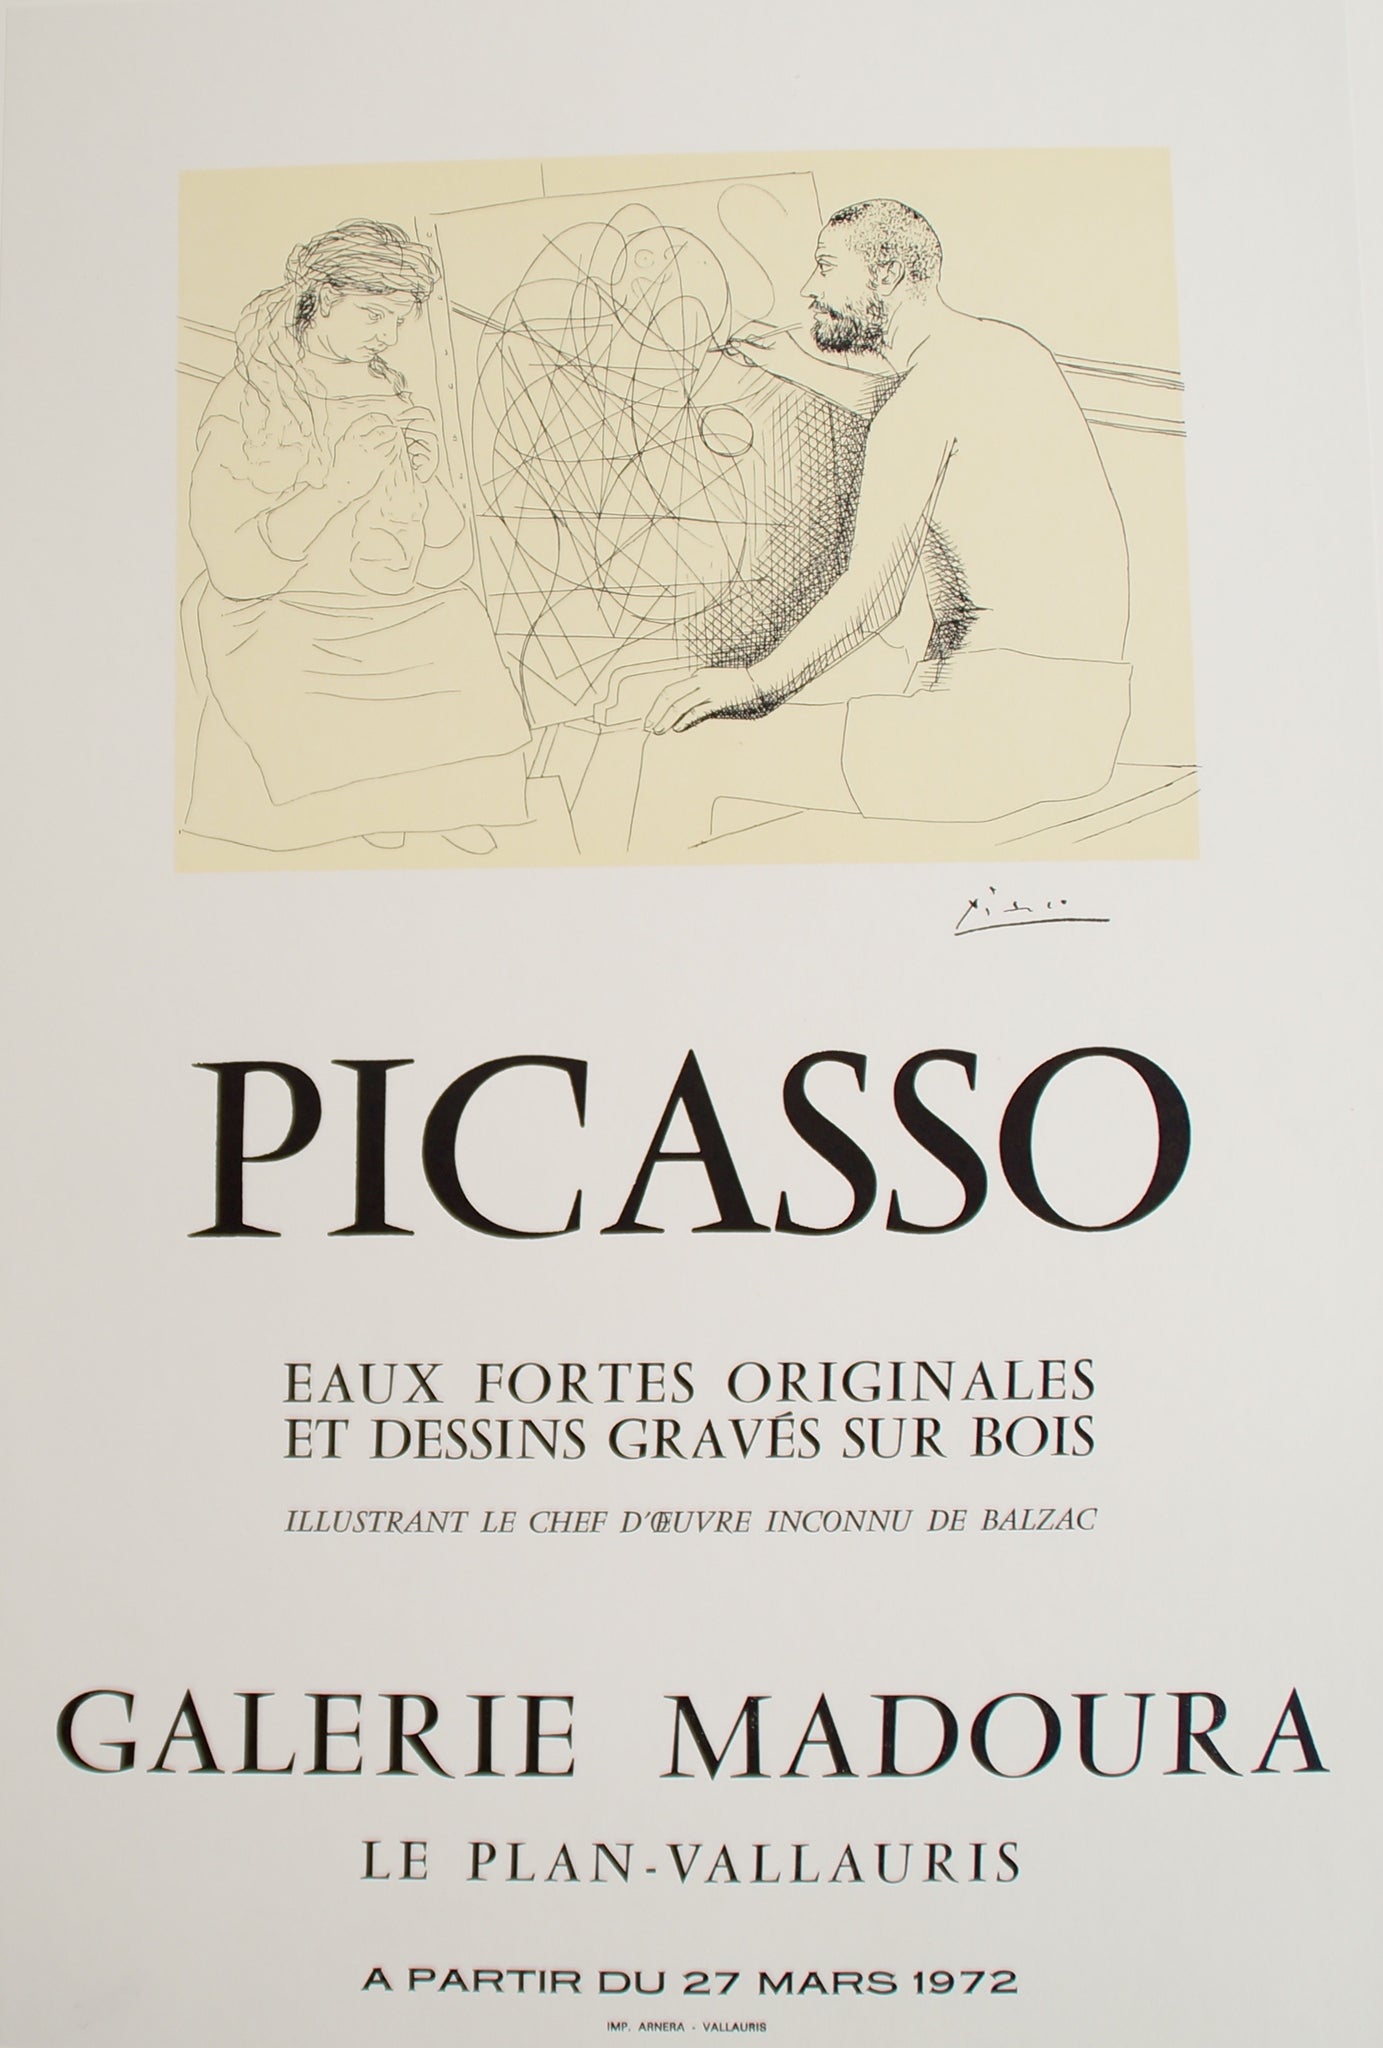 Affiche Galerie Madoura  - Eaux Fortes Originales d'après Picasso, 1972    Affiche originale de 1972, eaux fortes originales et dessins gravés sur bois  illustrant le chef d'oeuvre inconnu de Balzac.  Galerie Madoura, le plan Vallauris, à partir du 27 mars 1972